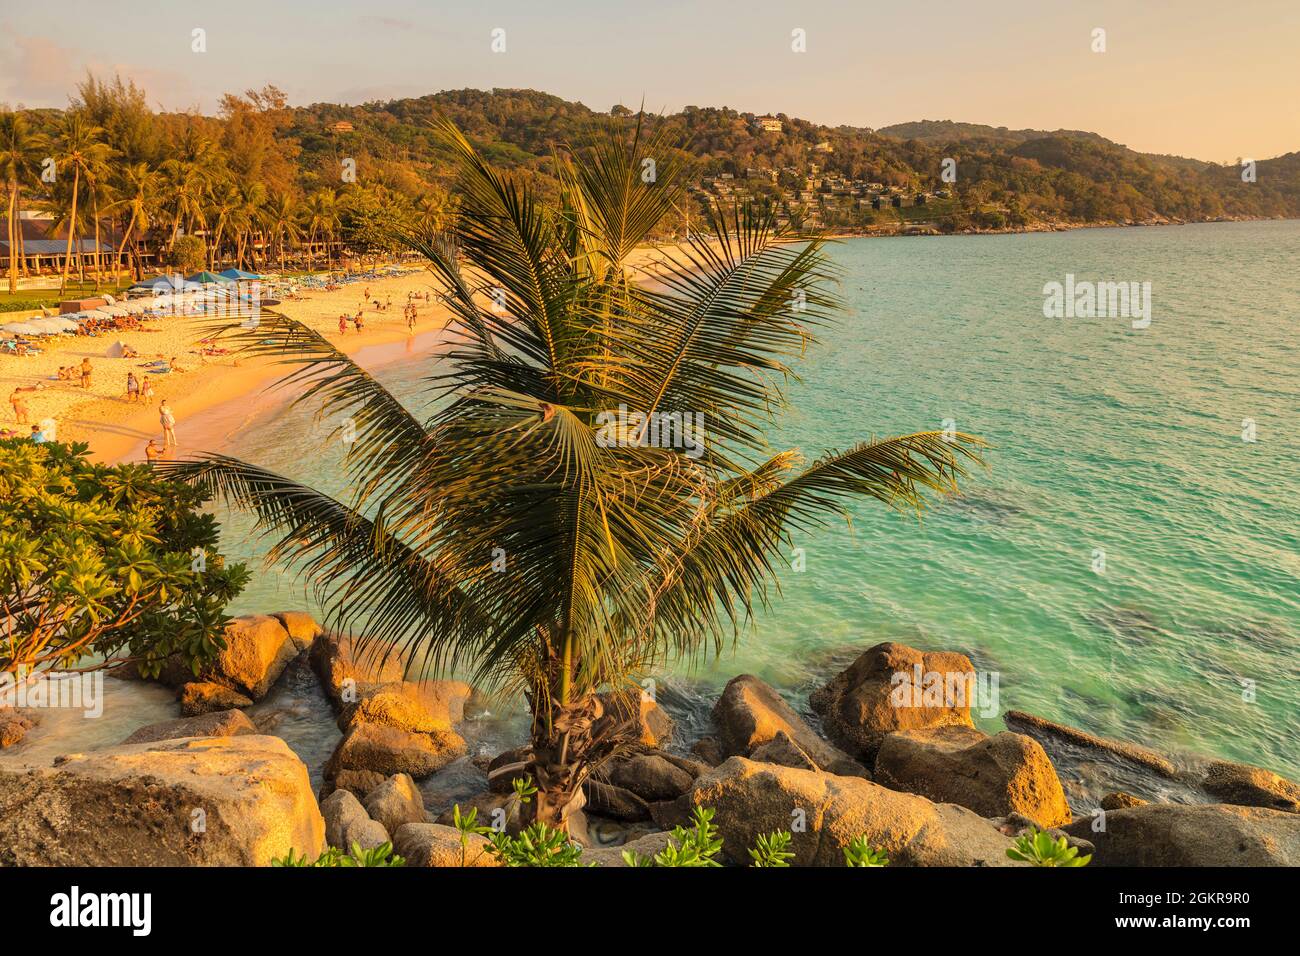 Kata Noi Beach, Phuket, Andaman Sea, Thailand, Southeast Asia, Asia Stock Photo